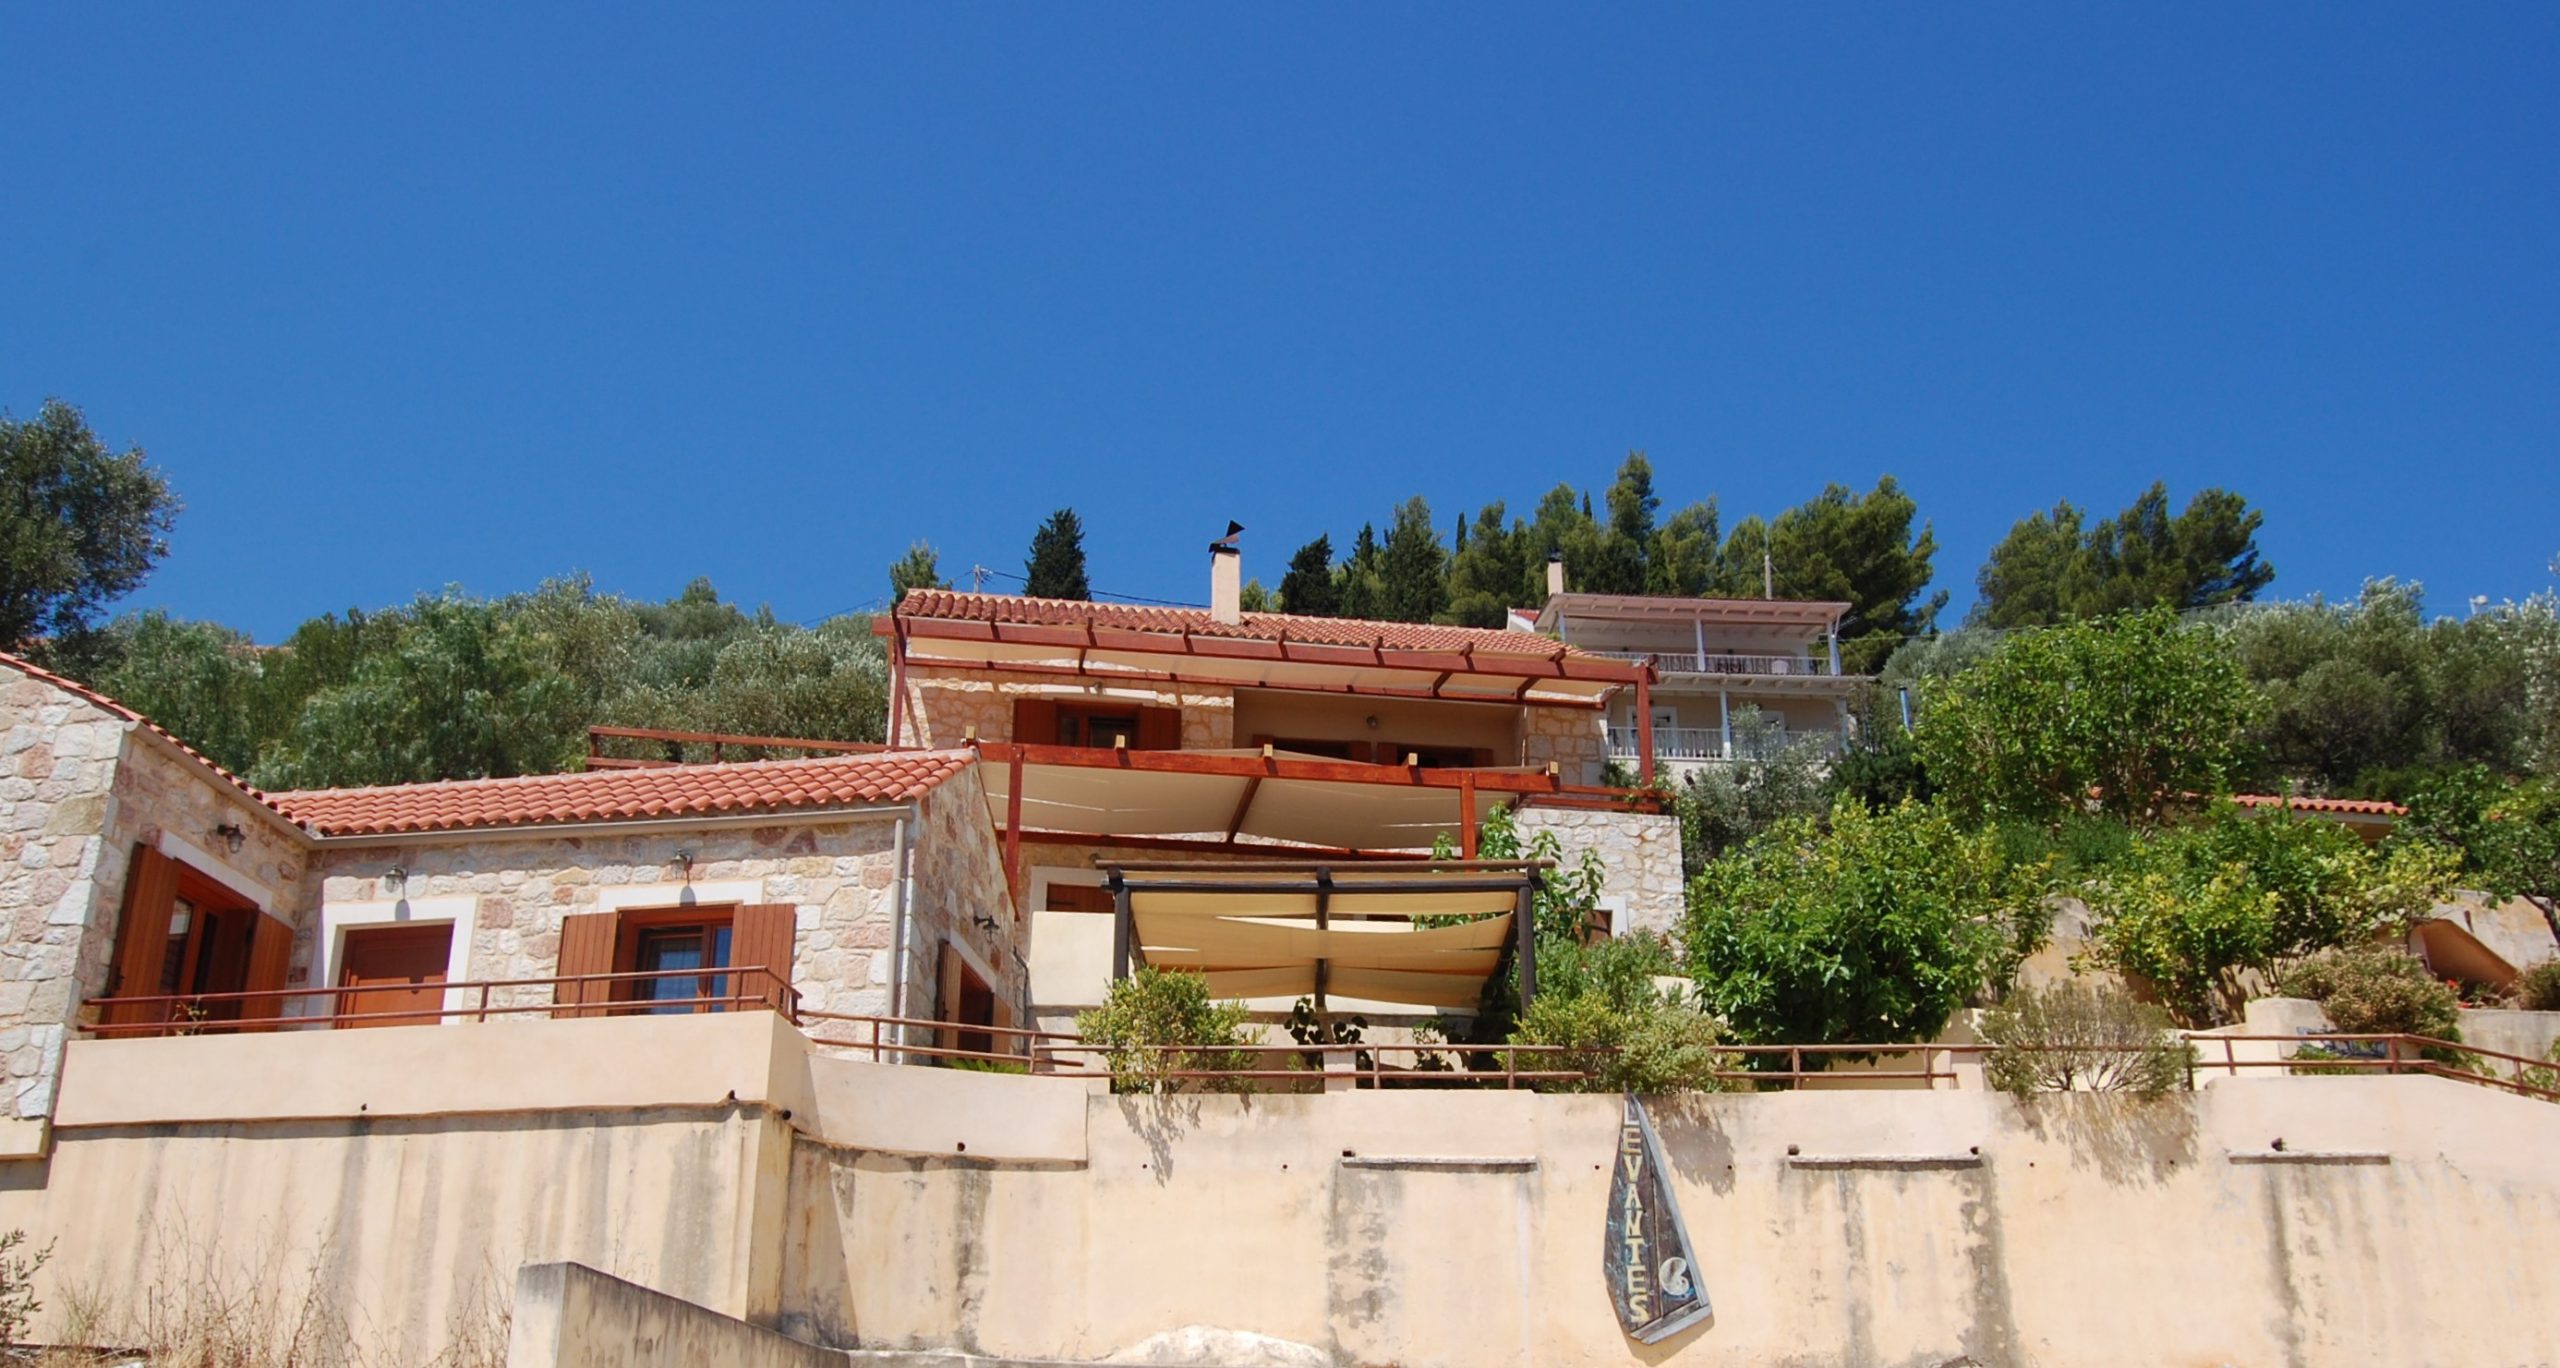 Πέτρινη βεράντα εισόδου ενός ενοικιαζόμενου ακινήτου στην Ιθάκη Ελλάδα